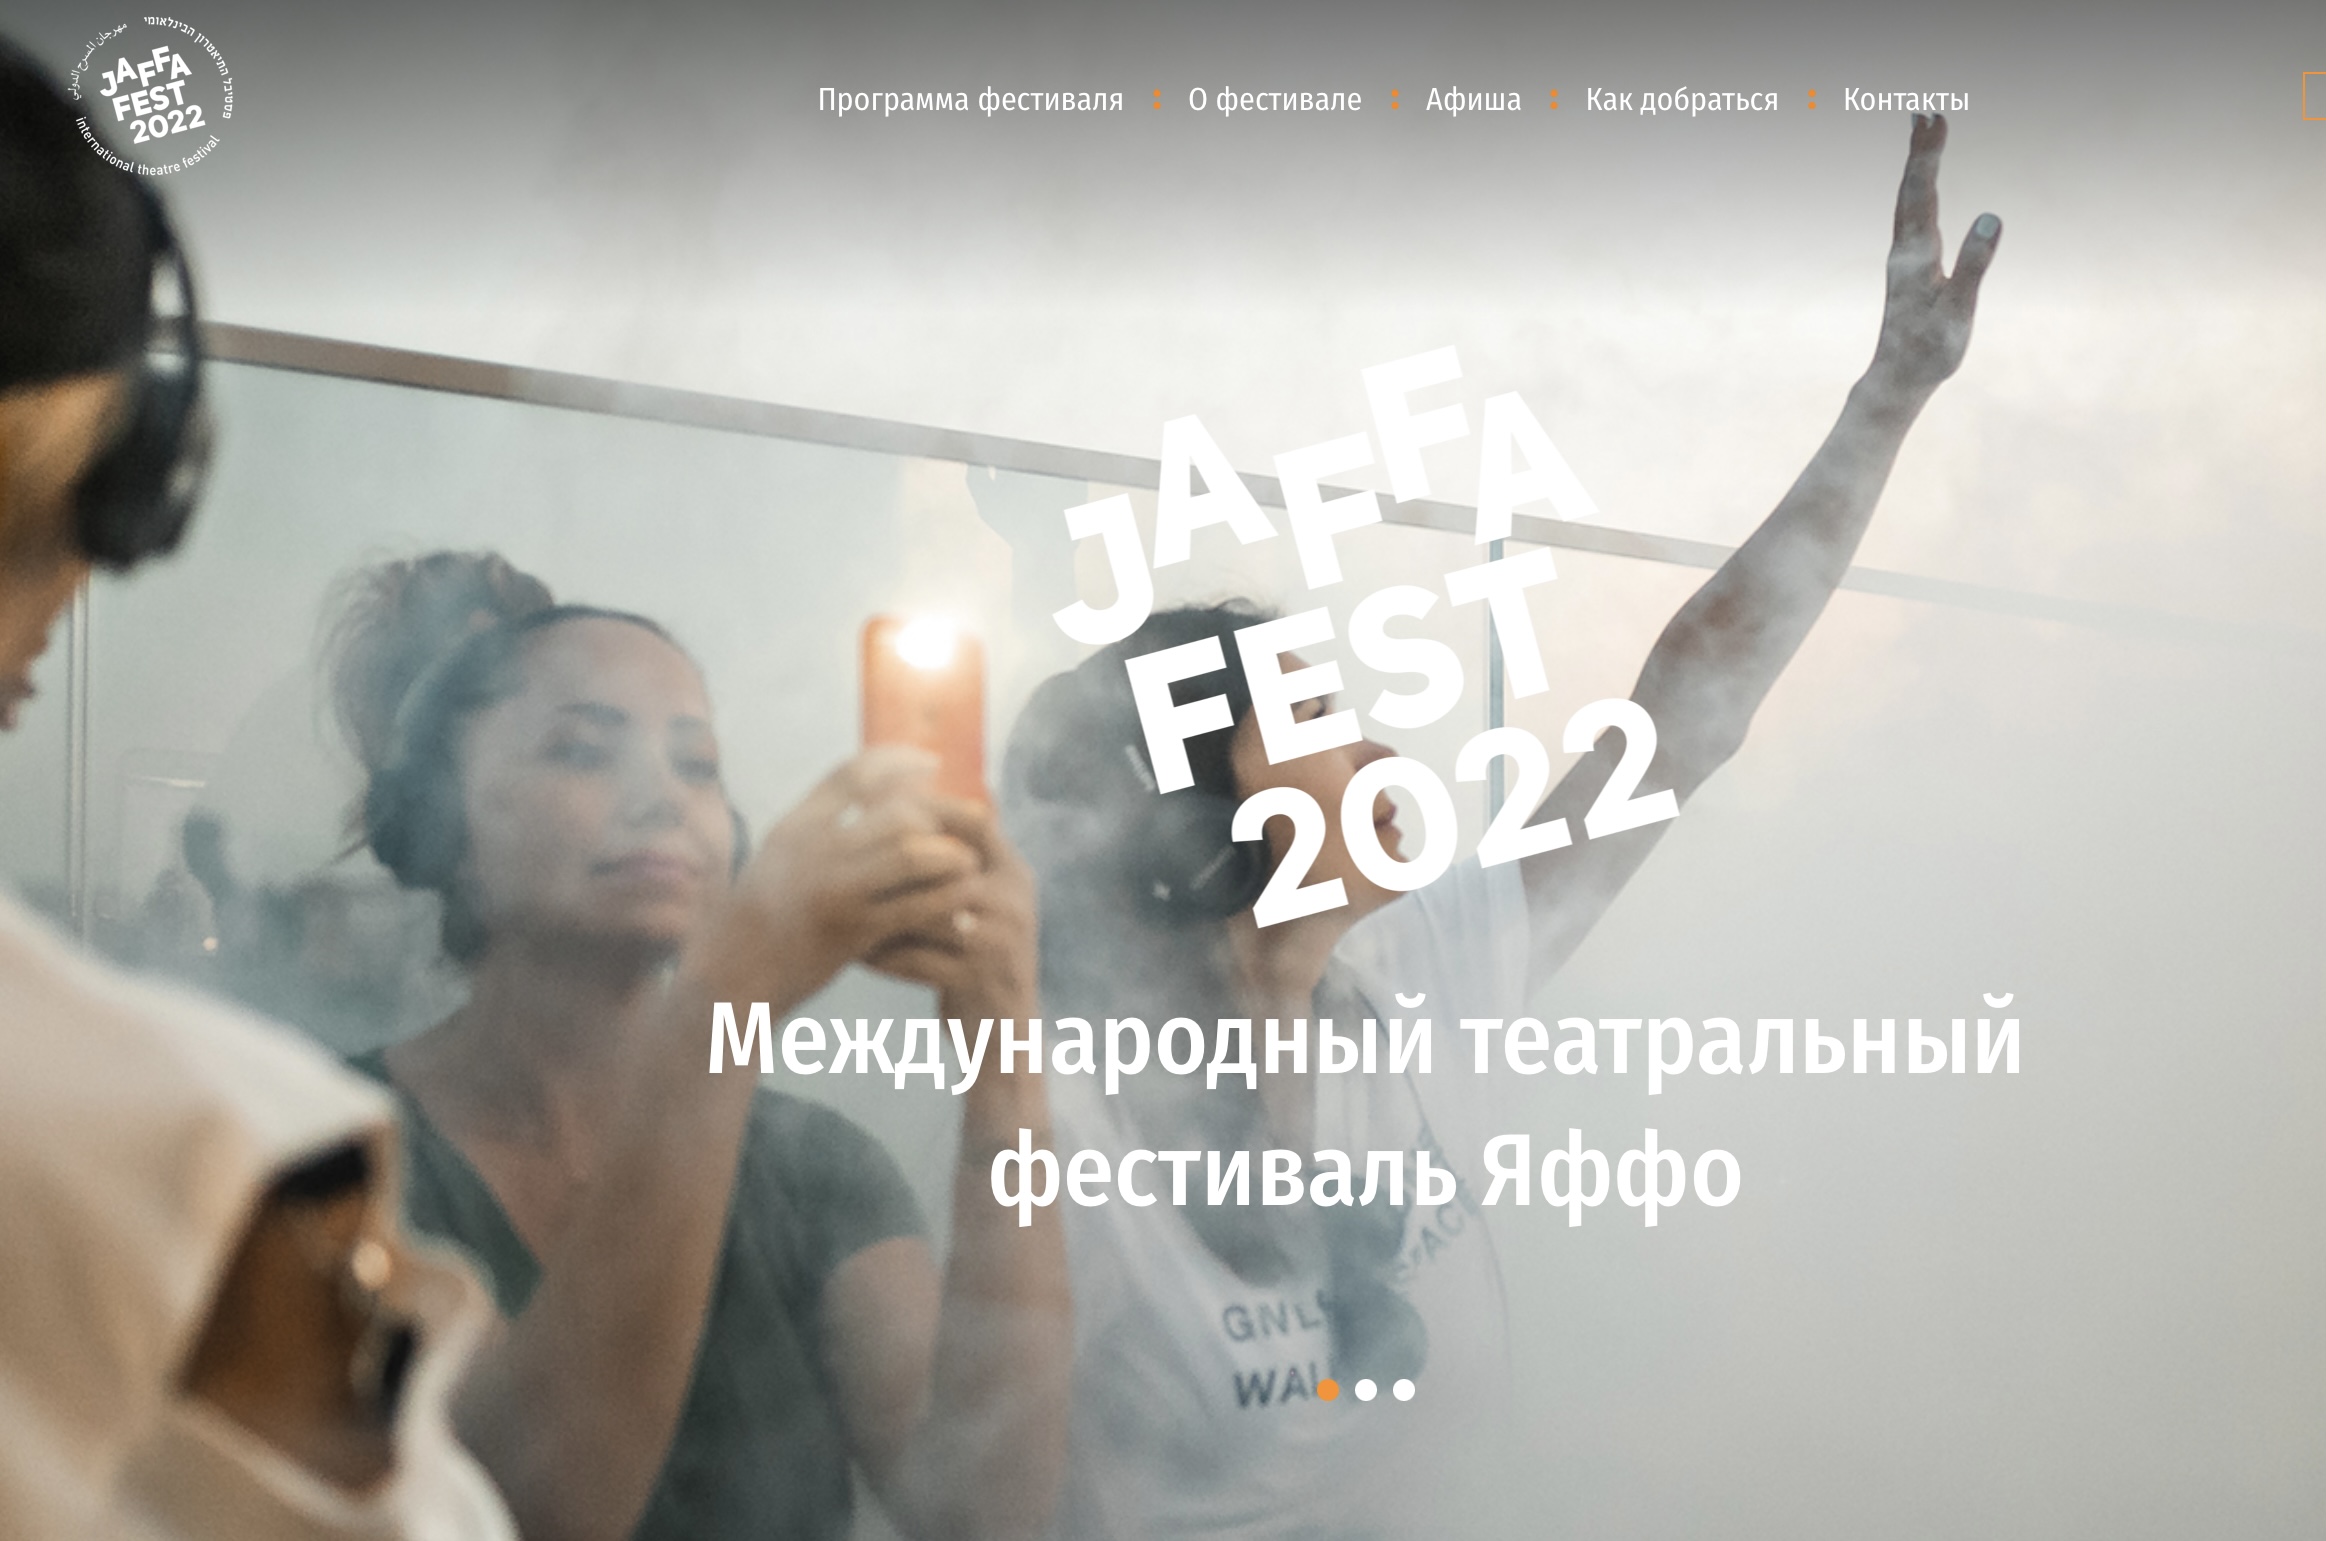 Jaffa Fest-2022. Официальный сайт фестиваля